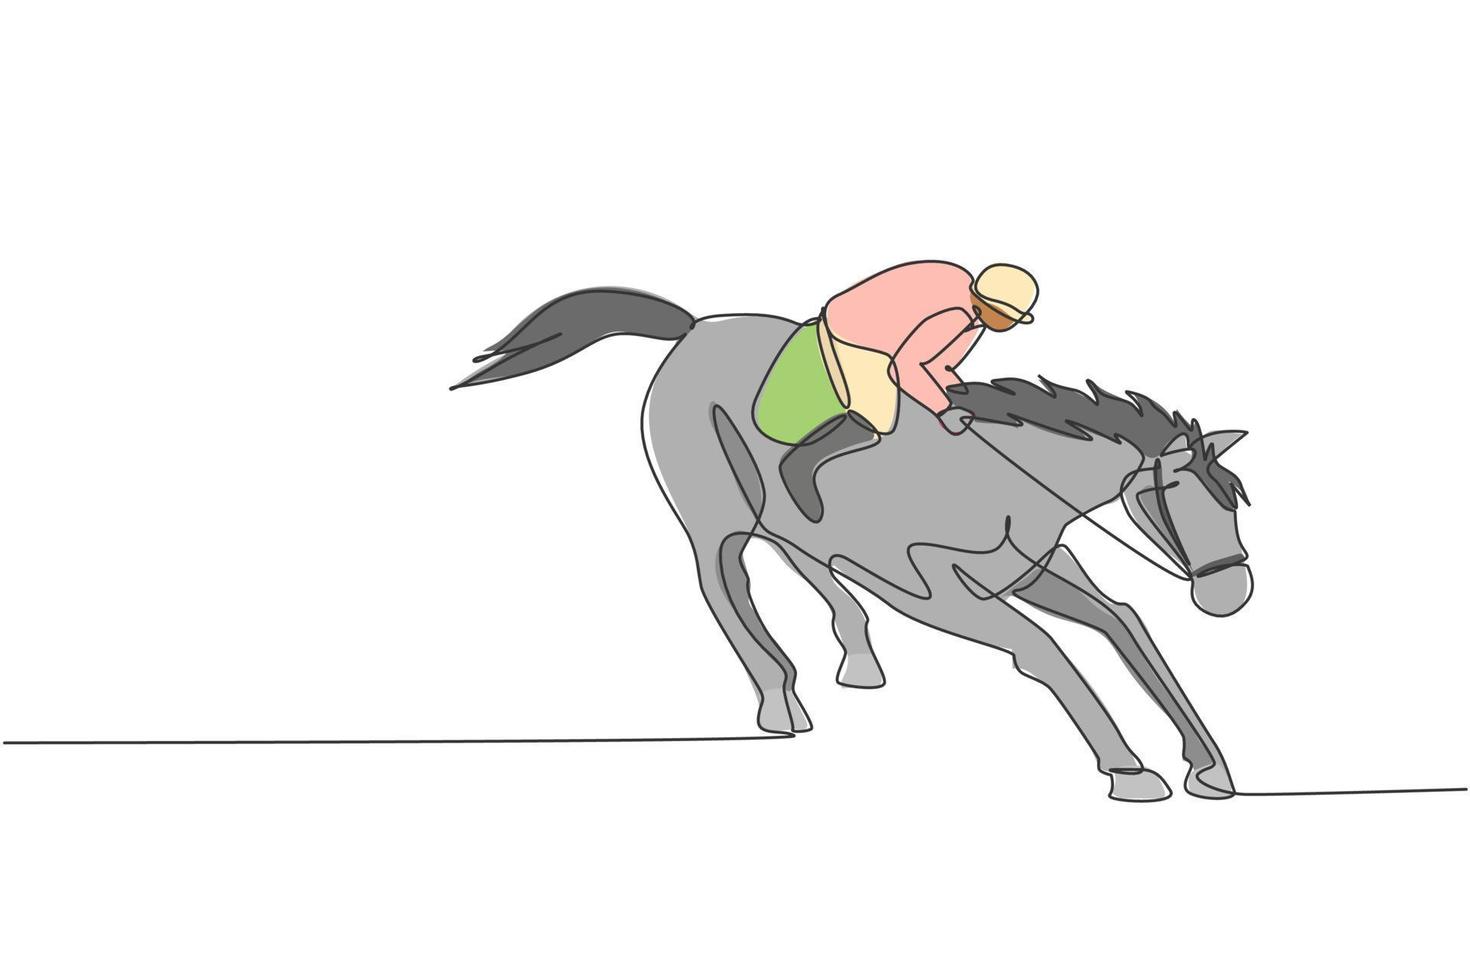 een doorlopende lijntekening van een jonge ruiter in actie. paarden training op racebaan. paardensport competitie concept. dynamische enkele lijn tekenen ontwerp grafische vectorillustratie vector